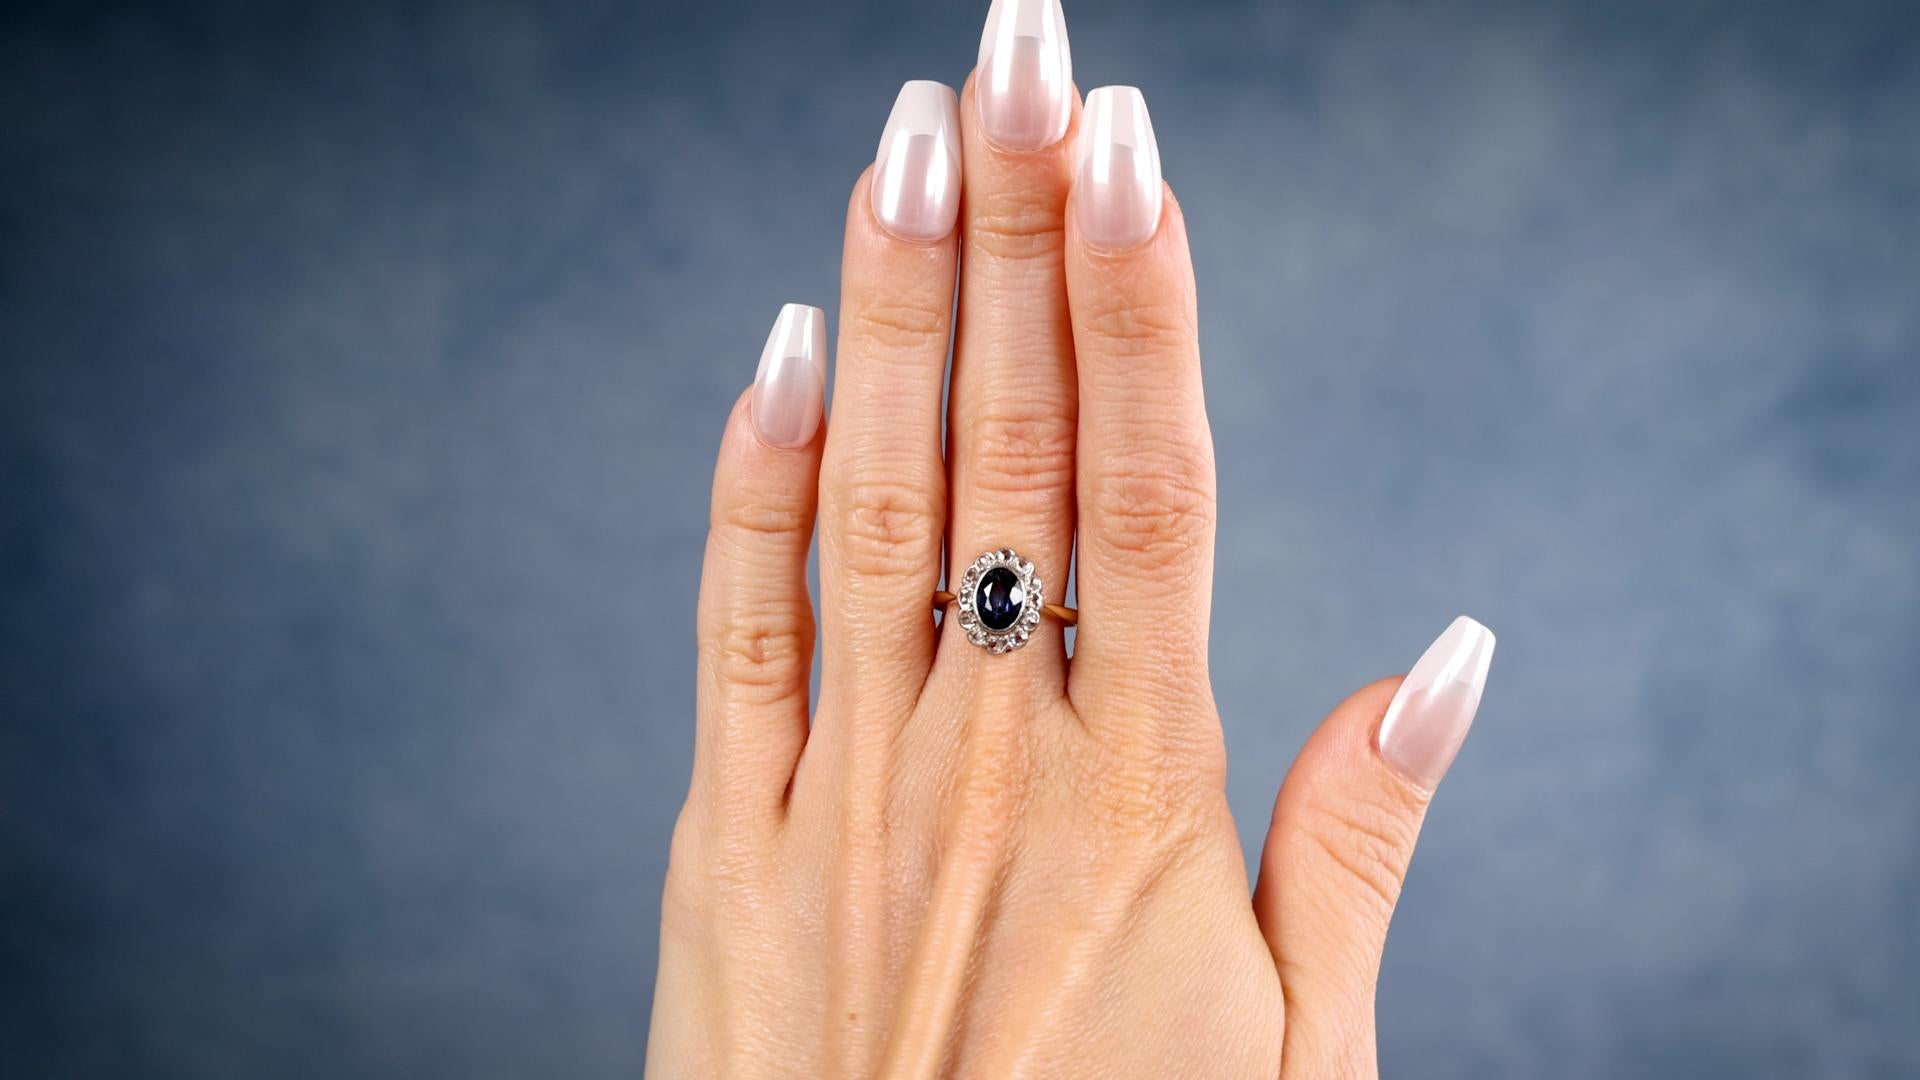 Ein Edwardian Sapphire Diamond 18k Gelbgold Platin Ring. Mit einem ovalen Saphir im Mischschliff mit einem Gewicht von etwa 1.50 Karat. Akzentuiert durch 12 Diamanten im Rosenschliff mit einem Gesamtgewicht von etwa 0,50 Karat, eingestuft als nahezu